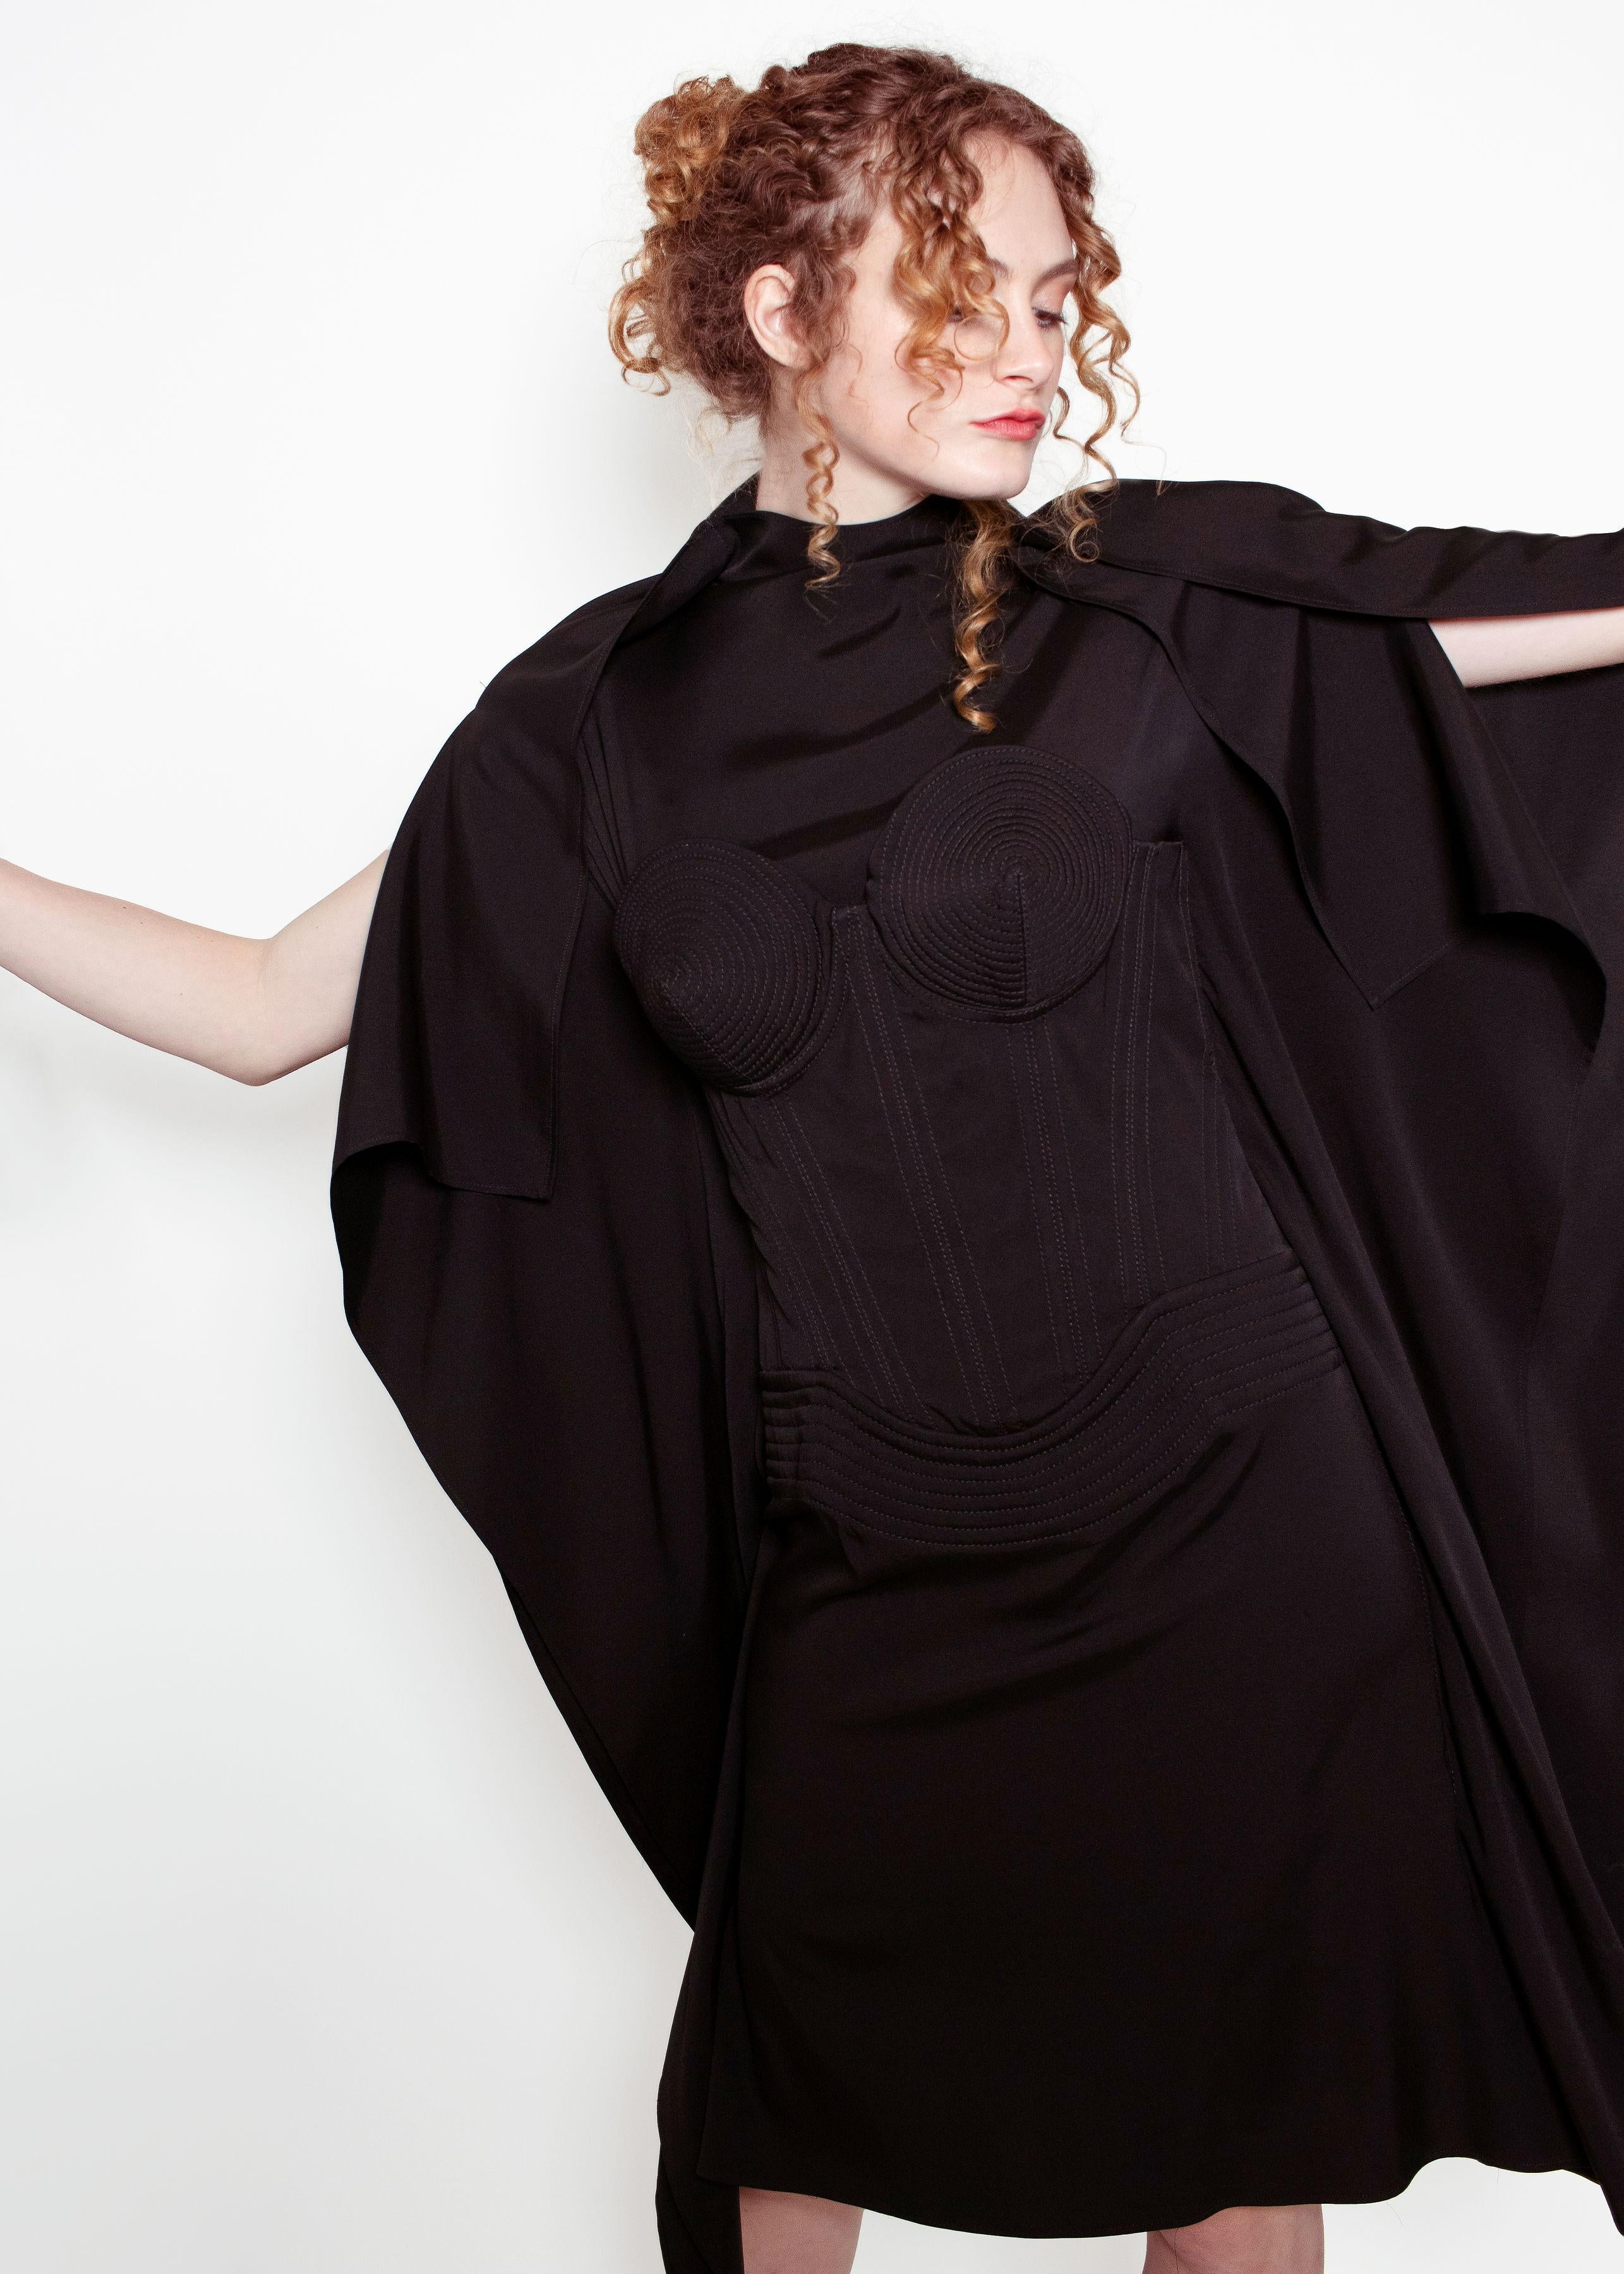 Une incroyable pièce de prêt-à-porter emblématique de Jean Paul Gaultier.  Notre robe à corset et soutien-gorge conique F/W 2010 est dotée d'un corset à lacets dans le dos de la robe.  Il est doté des emblématiques bonnets de soutien-gorge en forme